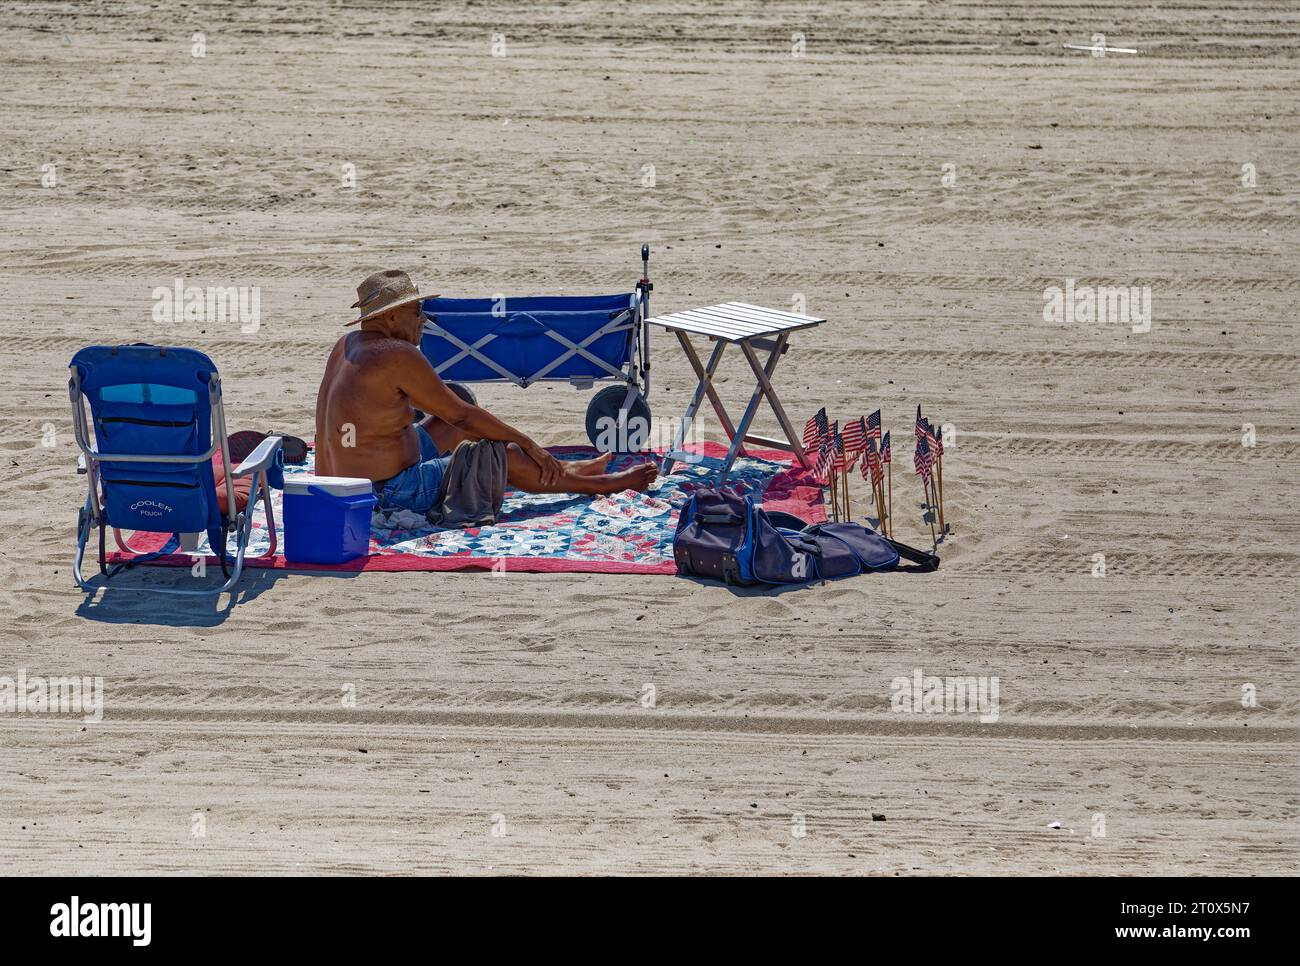 Ein einsamer Strandgänger scheint bereit zu sein, eine Weile am Atlantischen Strand des Riis Parks zu bleiben. Stockfoto